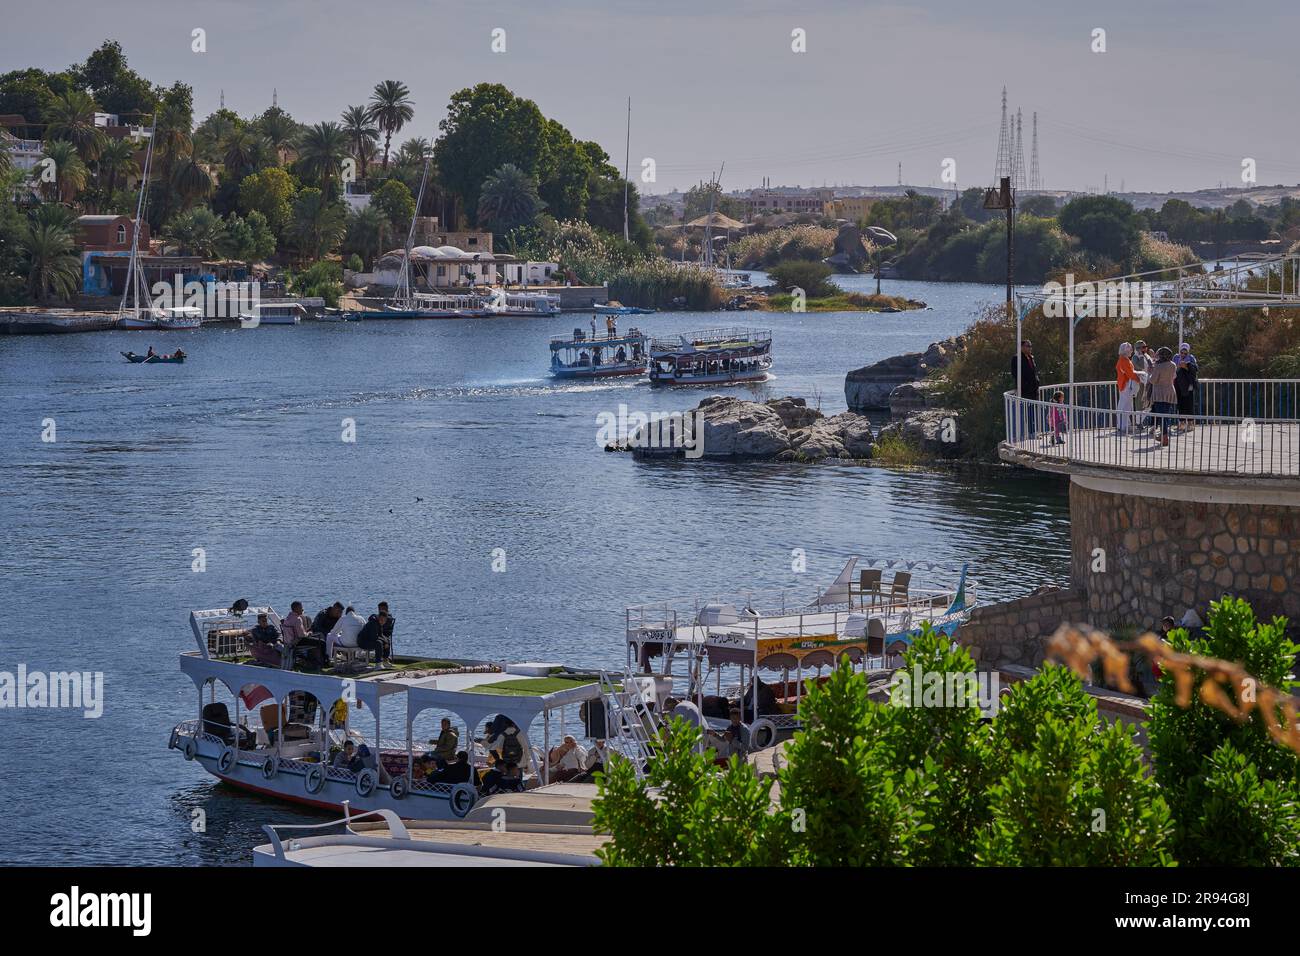 Foto pomeridiane del fiume Nilo ad Assuan, Egitto, che mostra la vista dal giardino botanico di Assuan con feluche e barche nel fiume Foto Stock